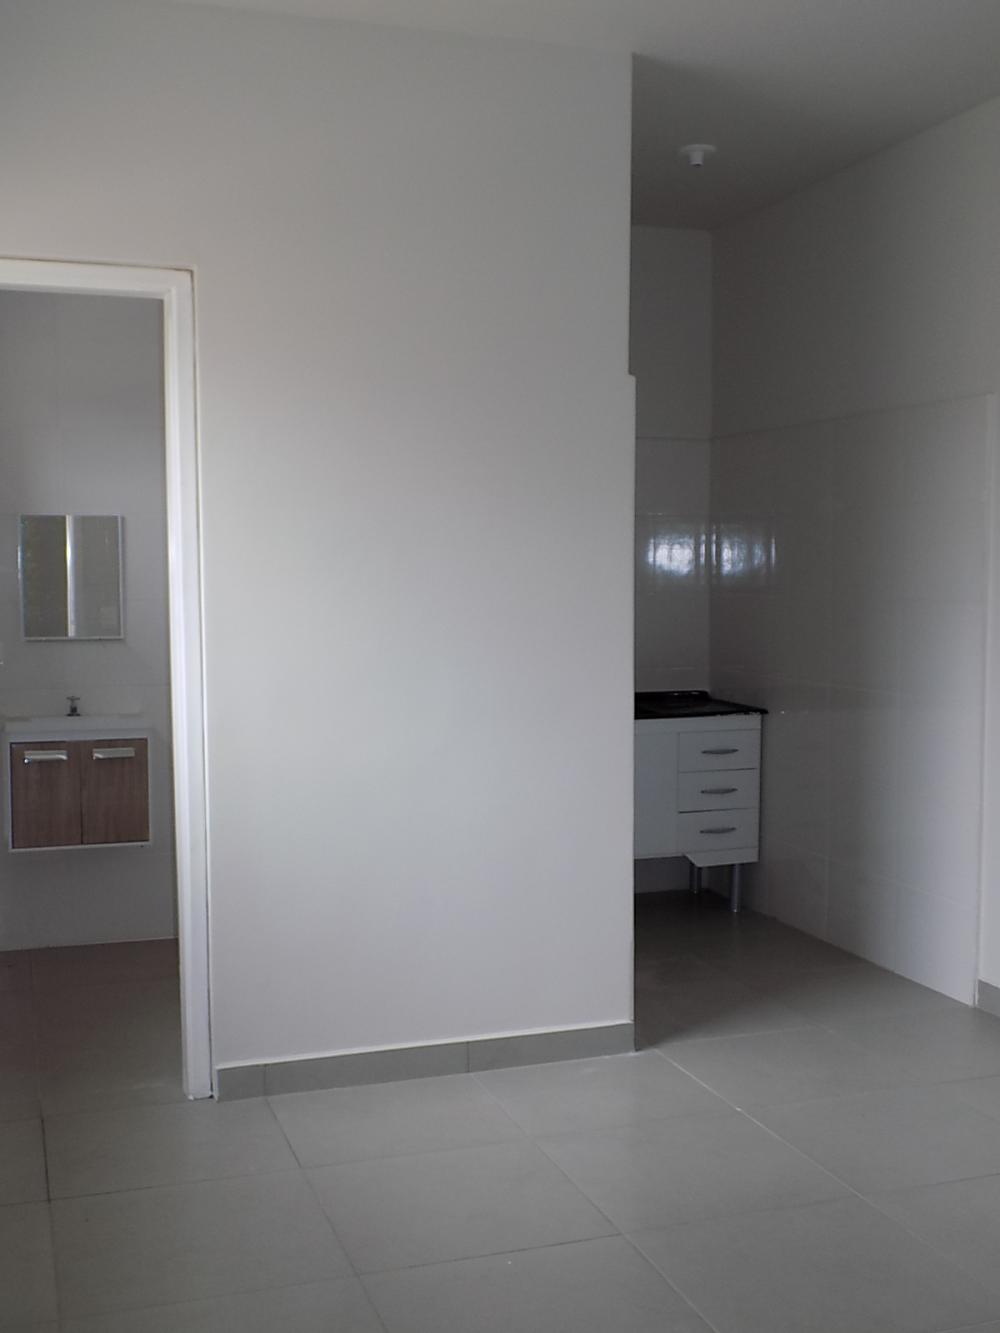 Conjunto de apartamentos, NOVO, próximo a Esalq, contendo 12  banheiros privativos com gabinete, cozinha  com gabinete e 1 vaga de garagem.